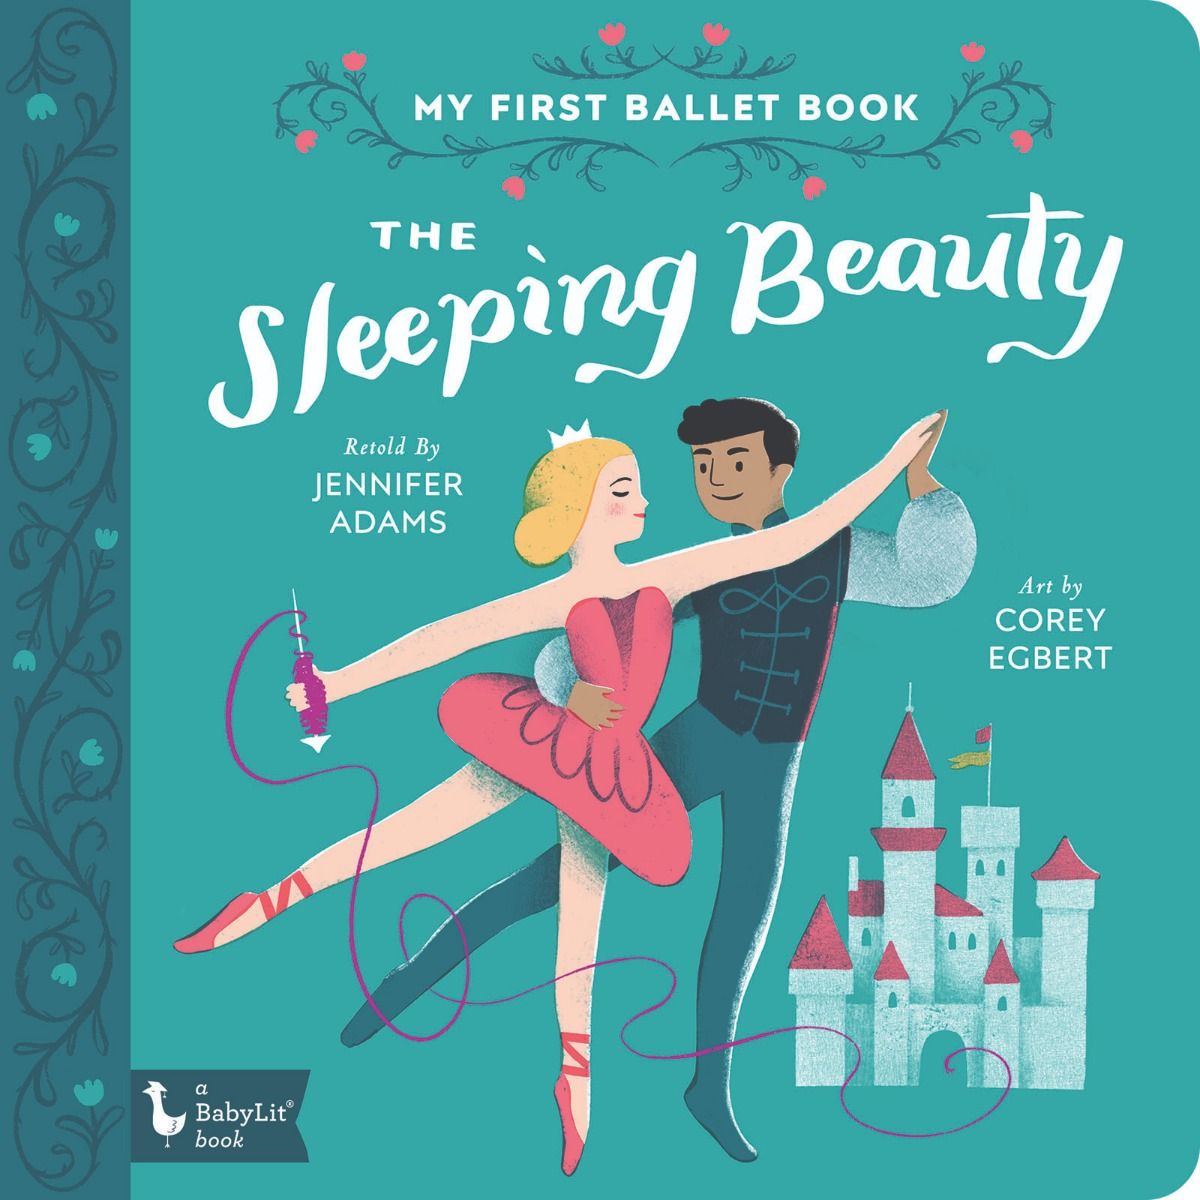 My First Ballet Book: Sleeping Beauty